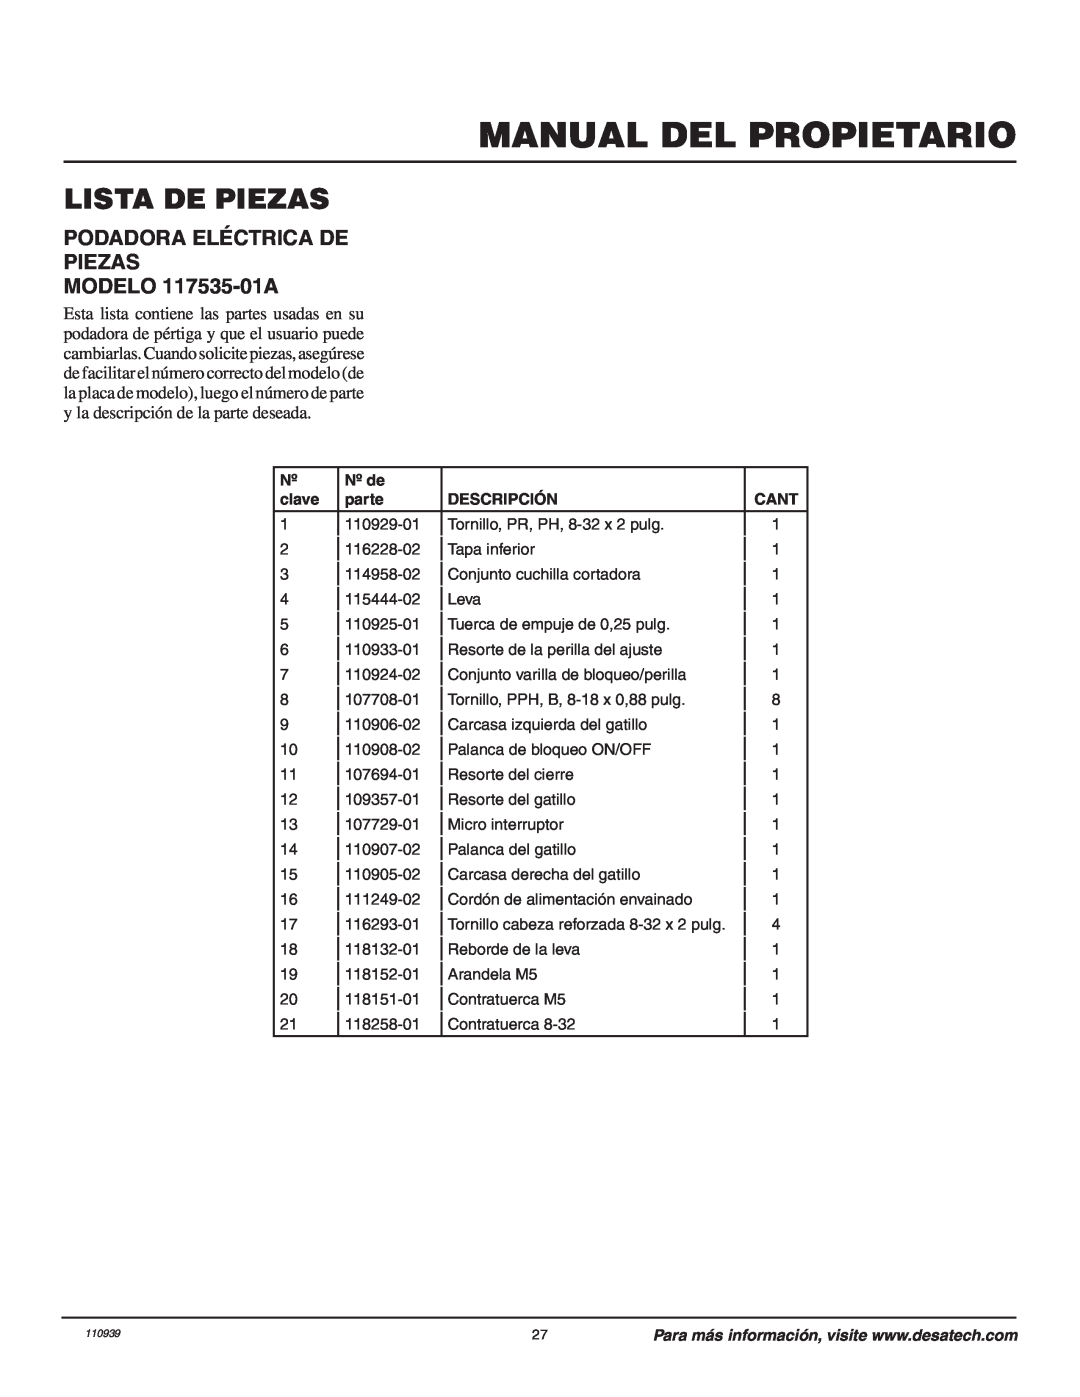 Remington Power Tools Lista De Piezas, PODADORA ELÉCTRICA DE PIEZAS MODELO 117535-01A, Manual Del Propietario 